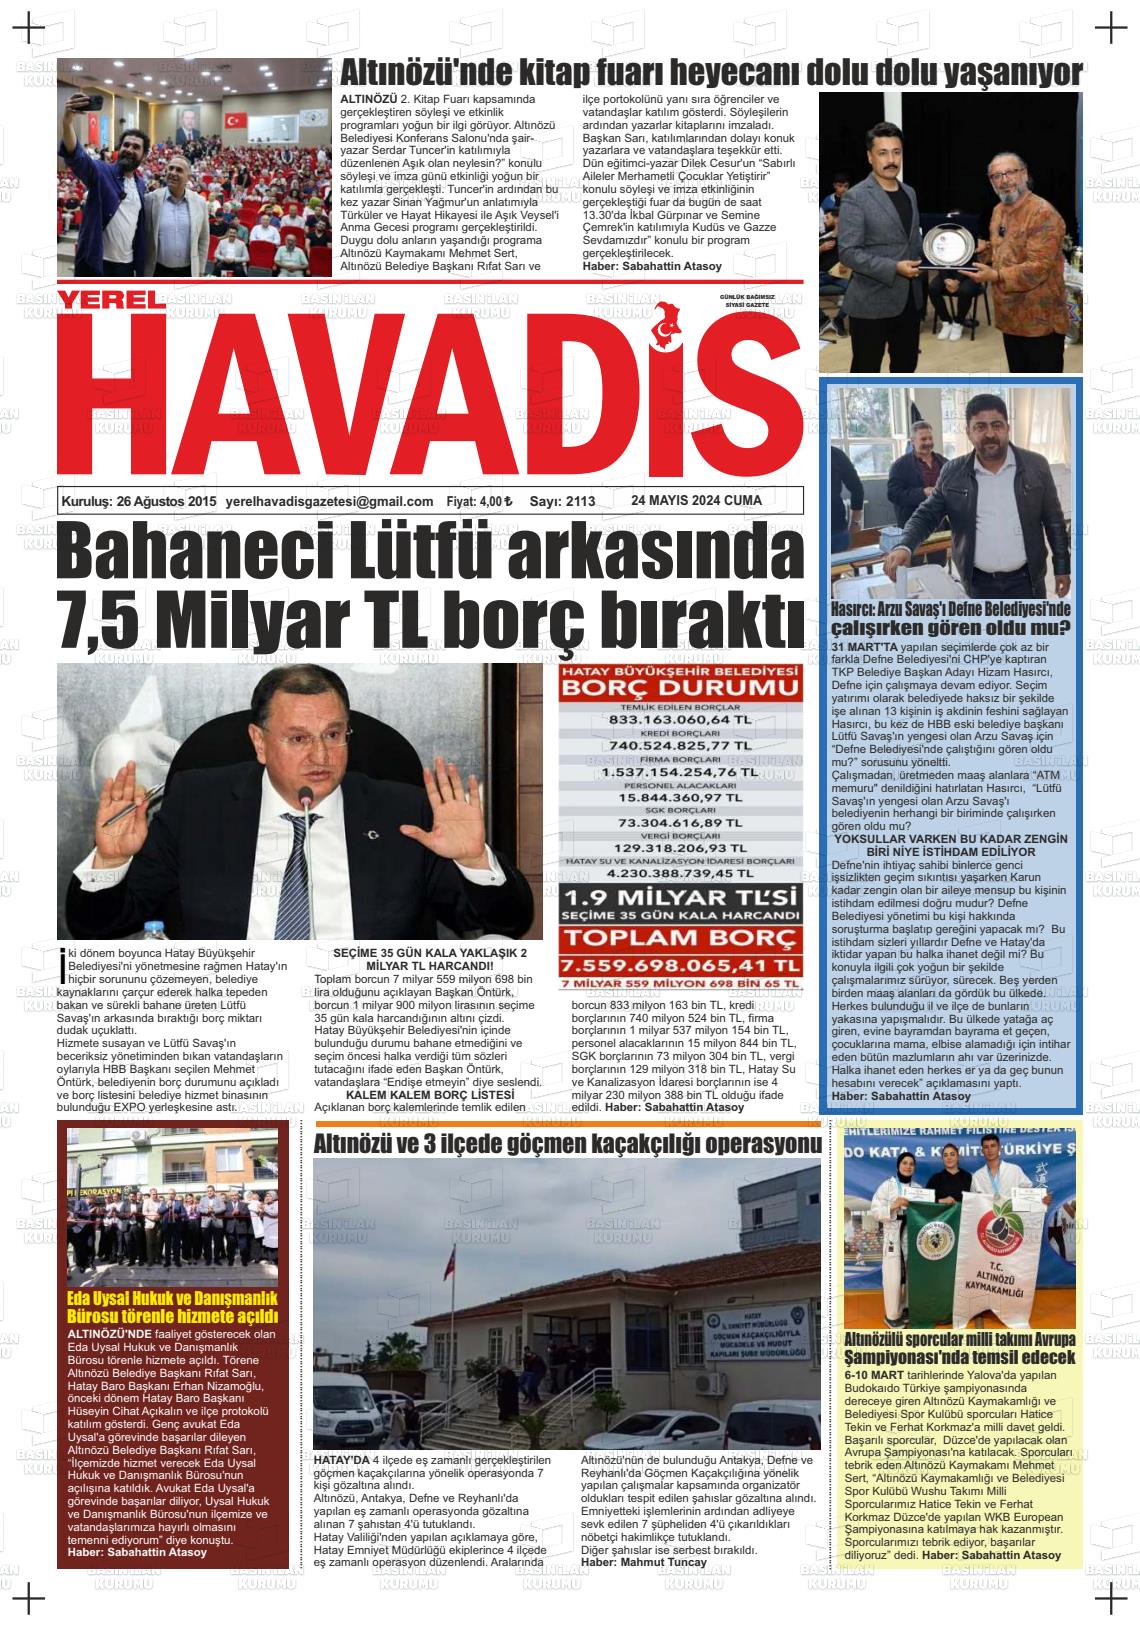 YEREL HAVADİS Gazetesi